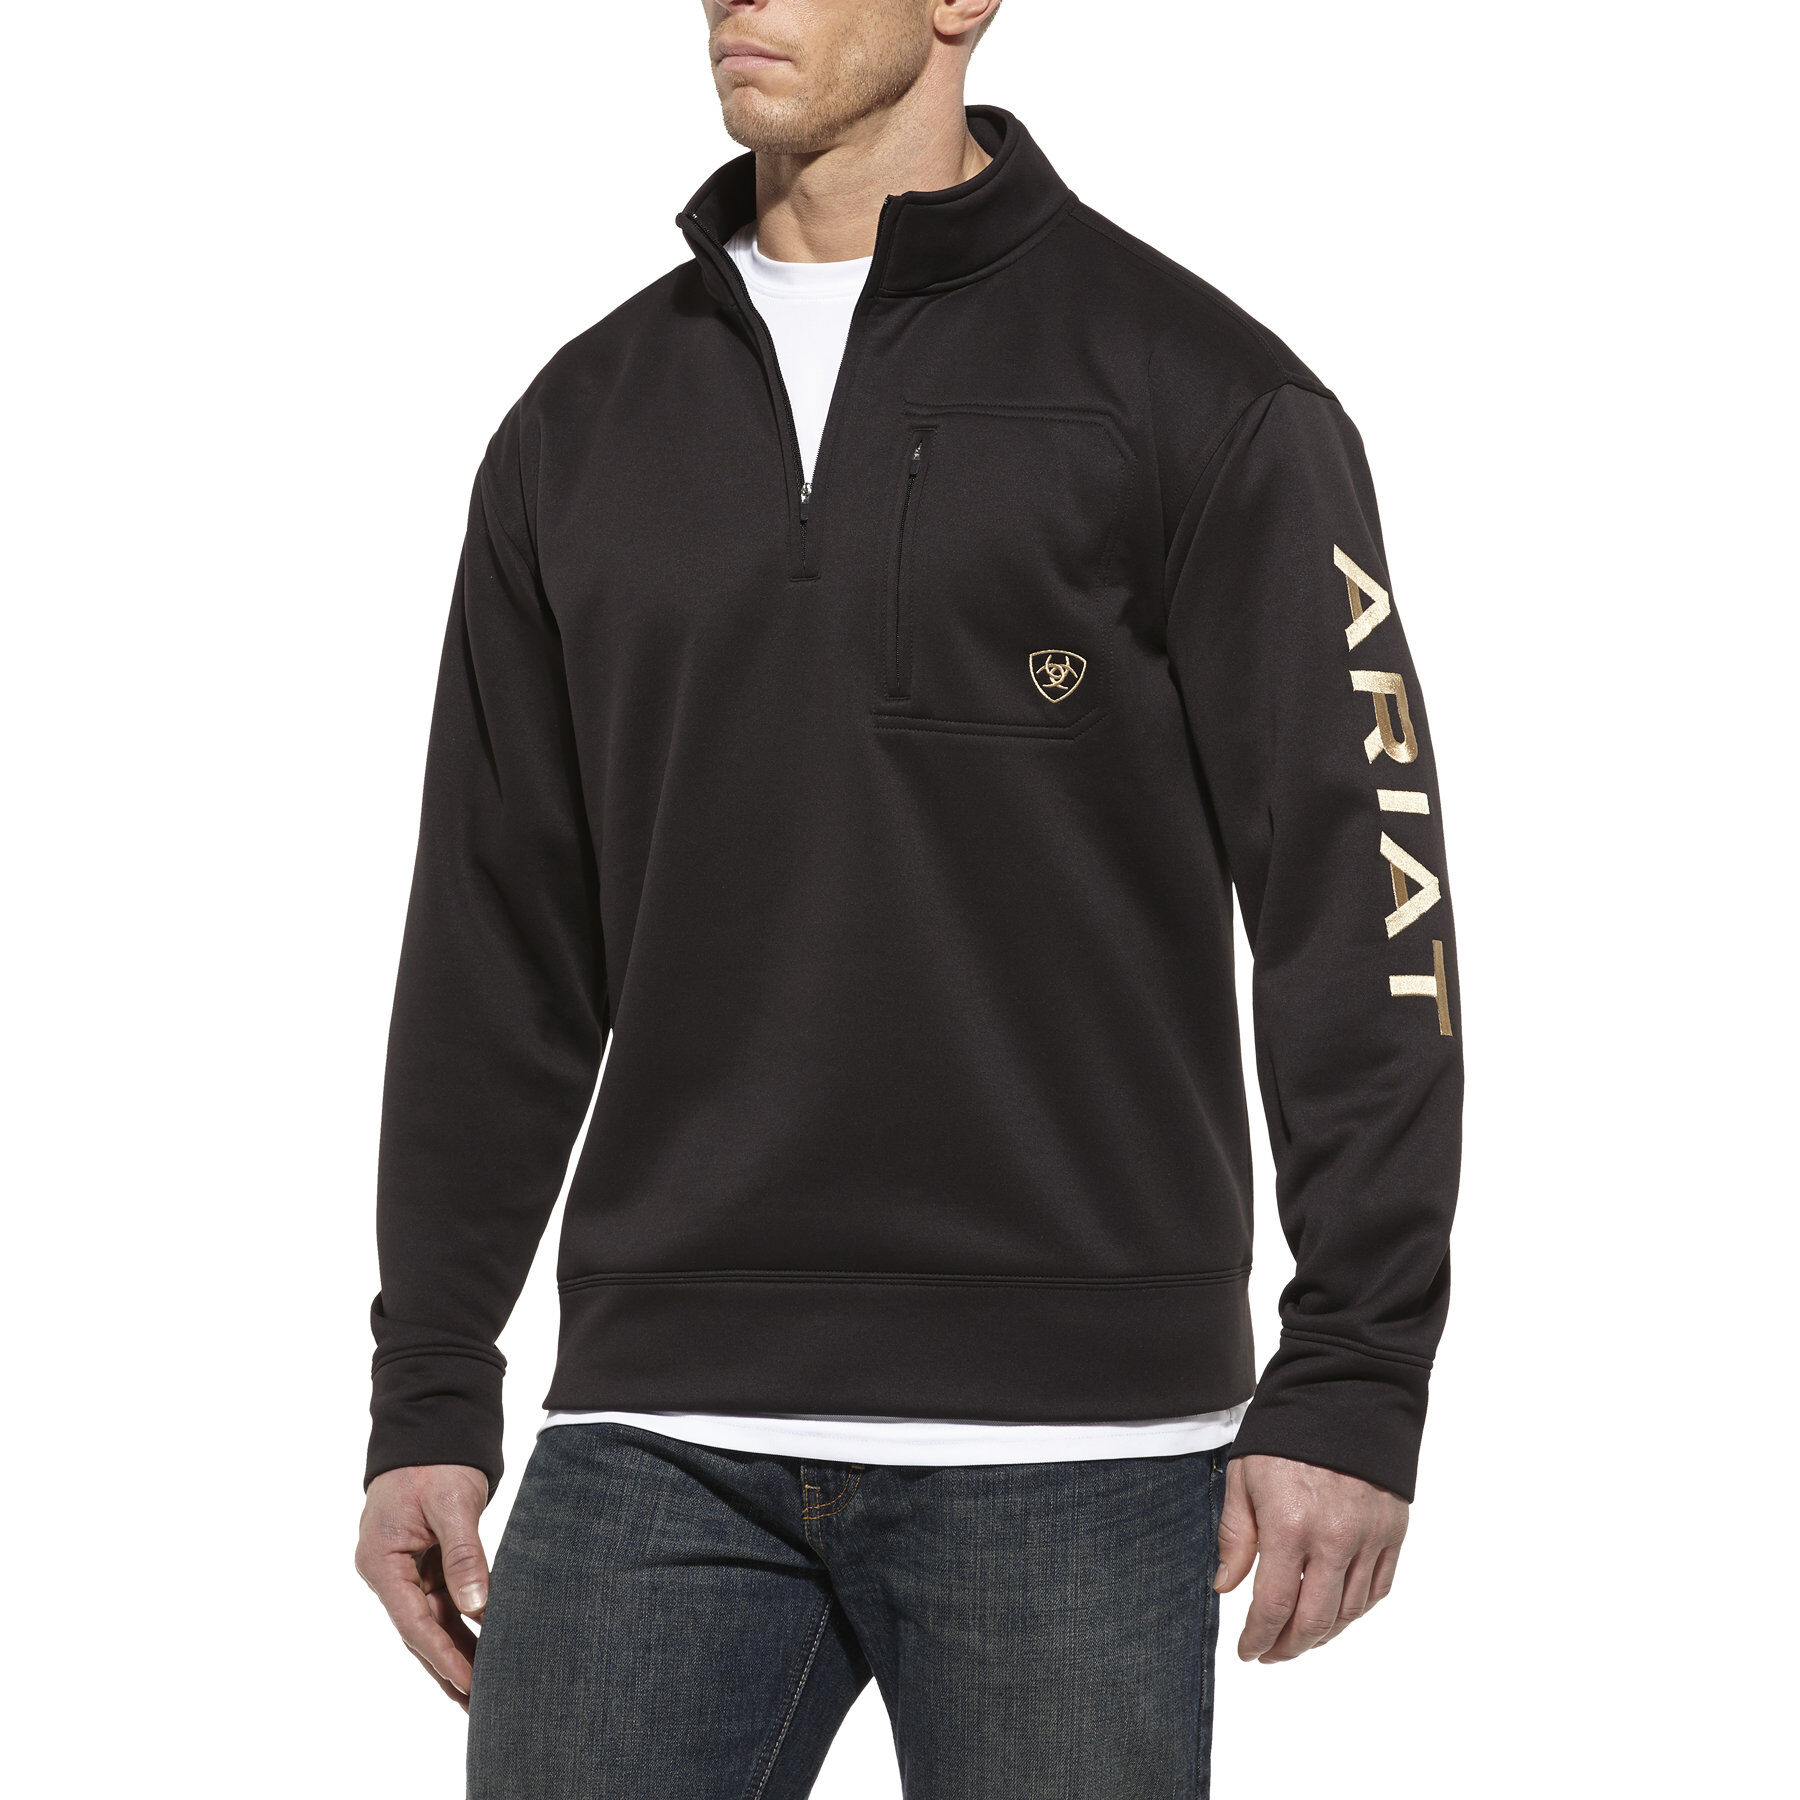 Men's Long Sleeve Team Logo 1/4 Zip Sweatshirt Fleece in Black, Medium by  Ariat